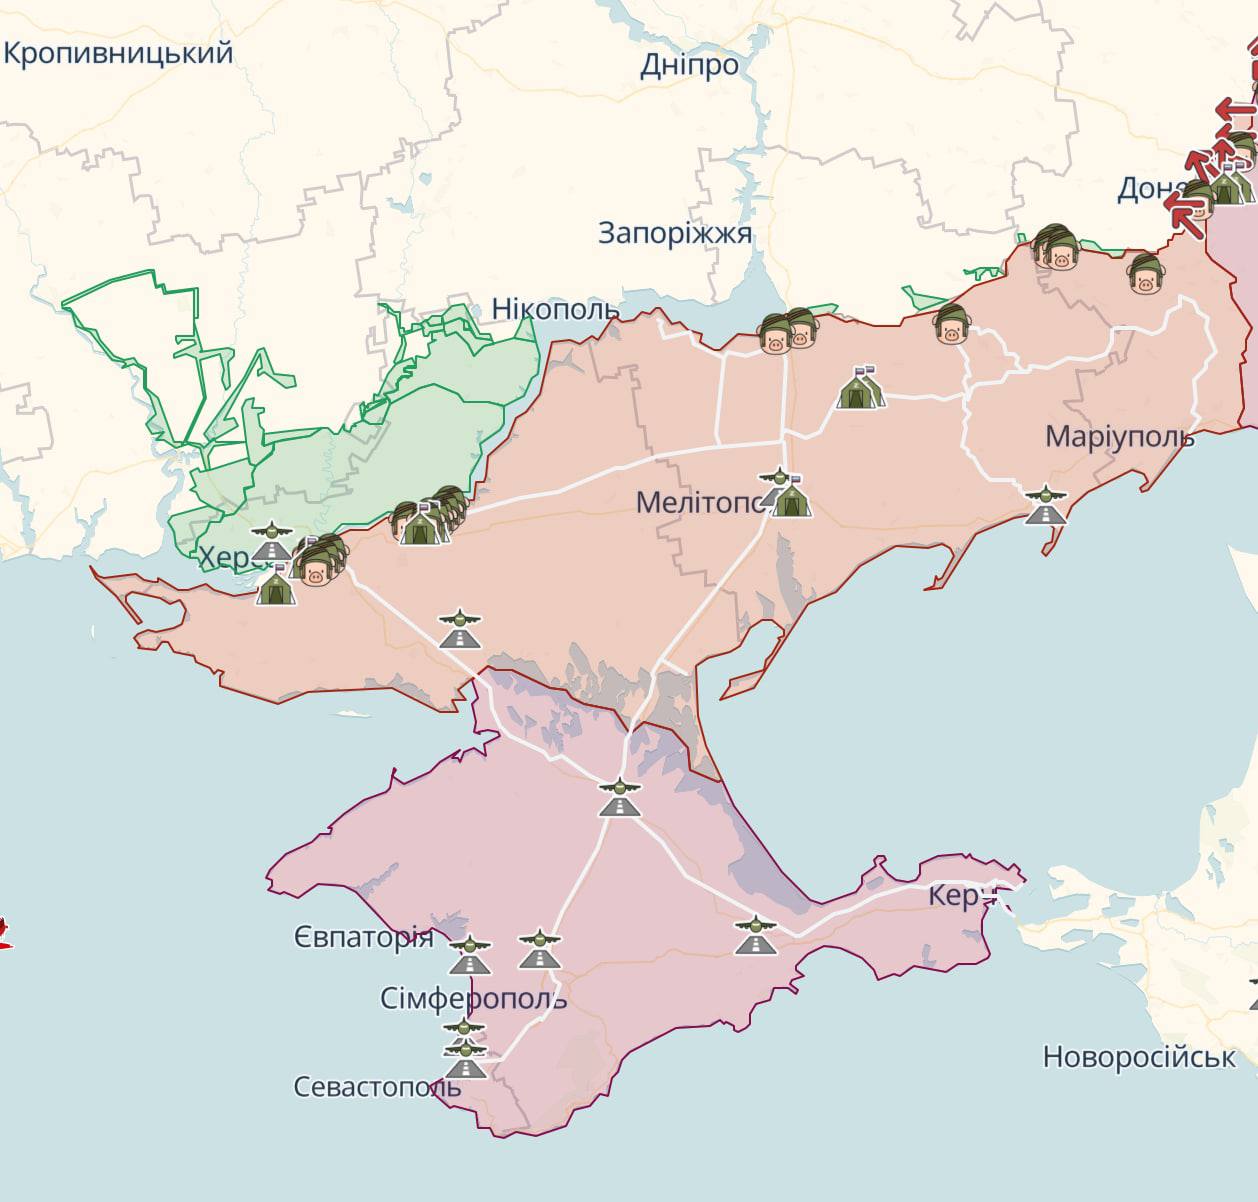 ВСУ не фиксируют признаков отступления россиян на южном направлении (Херсонская и Запорожская область), а наоборот — РФ там укрепляется и строит дополнительные оборонные рубежи